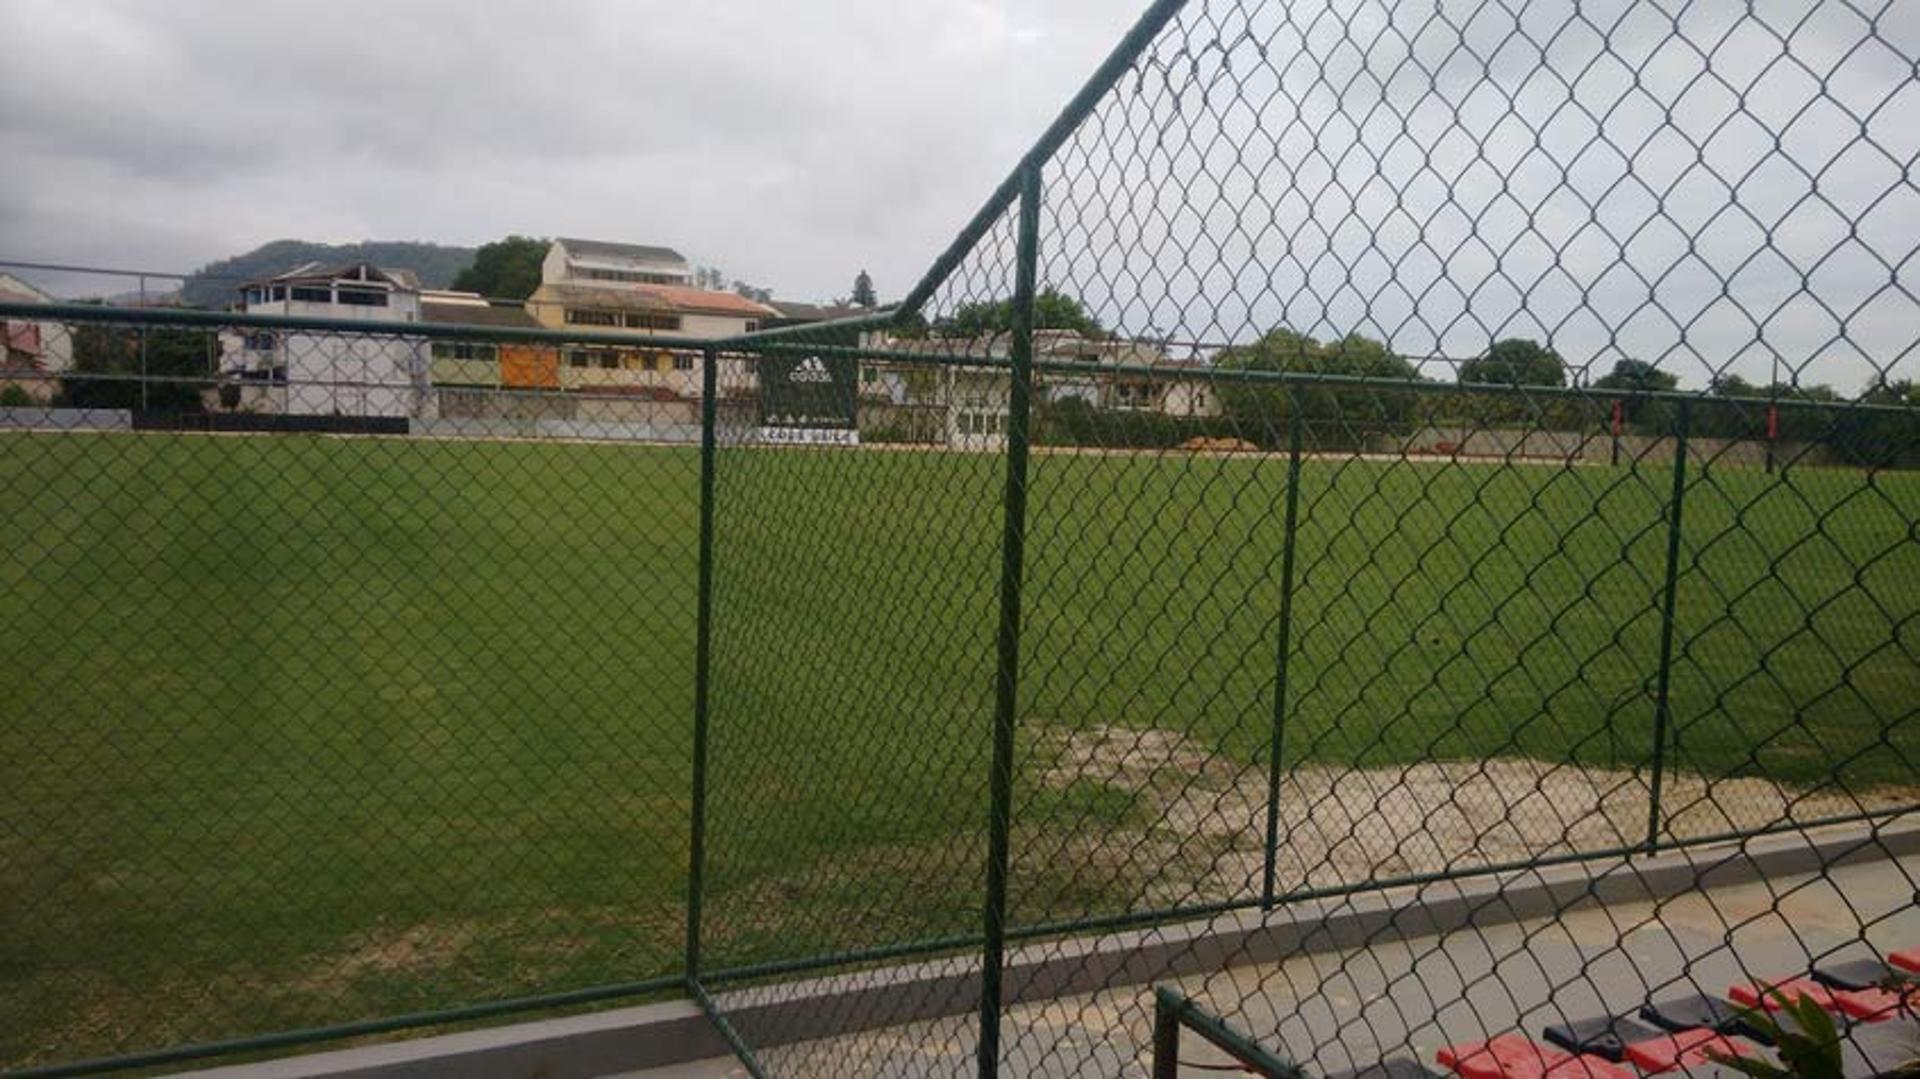 Campo 5 do Ninho do Urubu já tem gramado em com estado e marca de patrocinador de uniforme do Fla, ao fundo